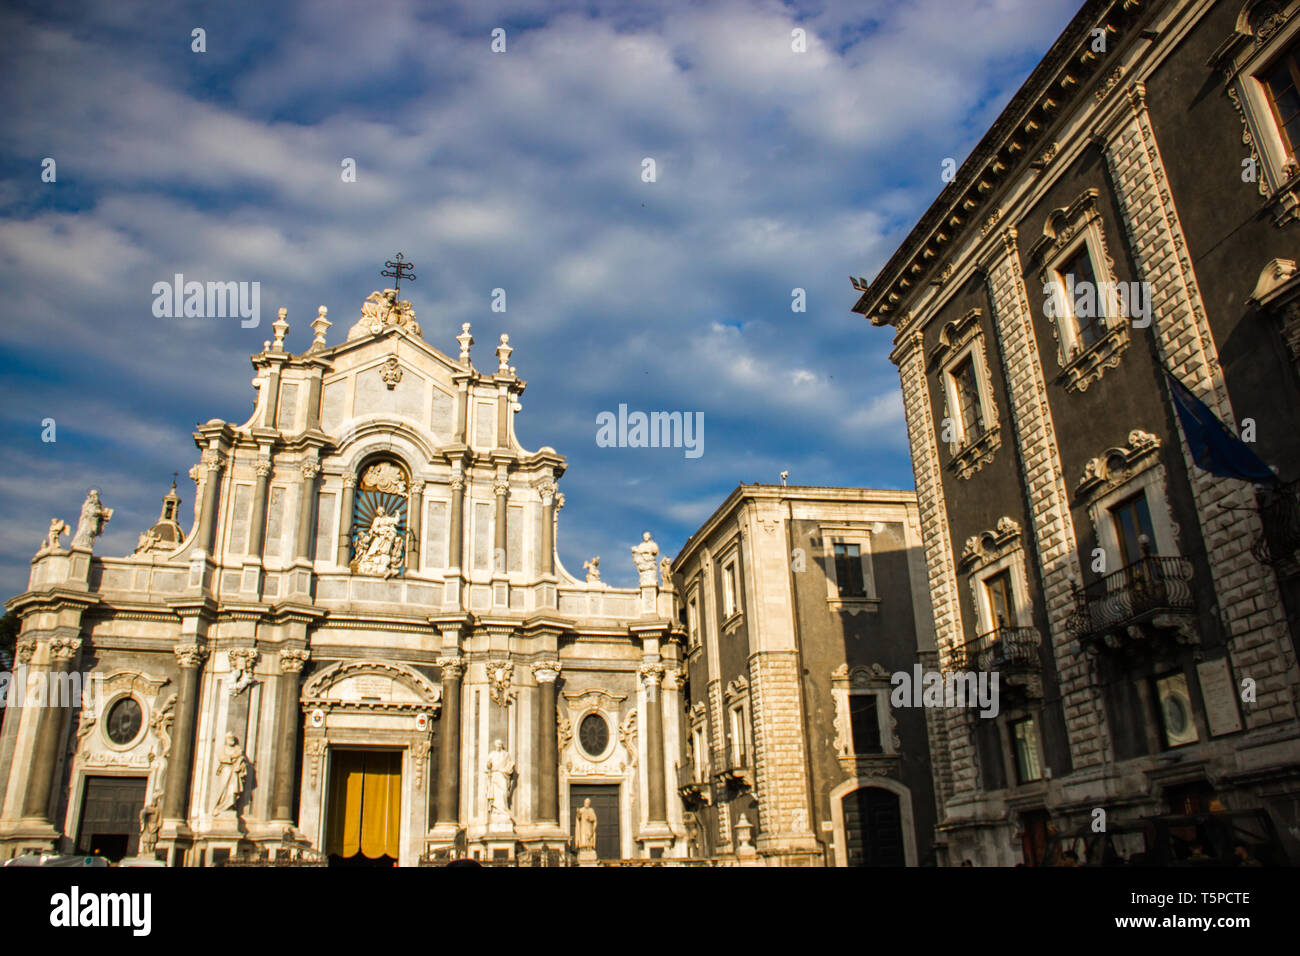 Die Kathedrale von Catania Fassade mit barocker Architektur, Statuen und Gebäude an der Seite Stockfoto